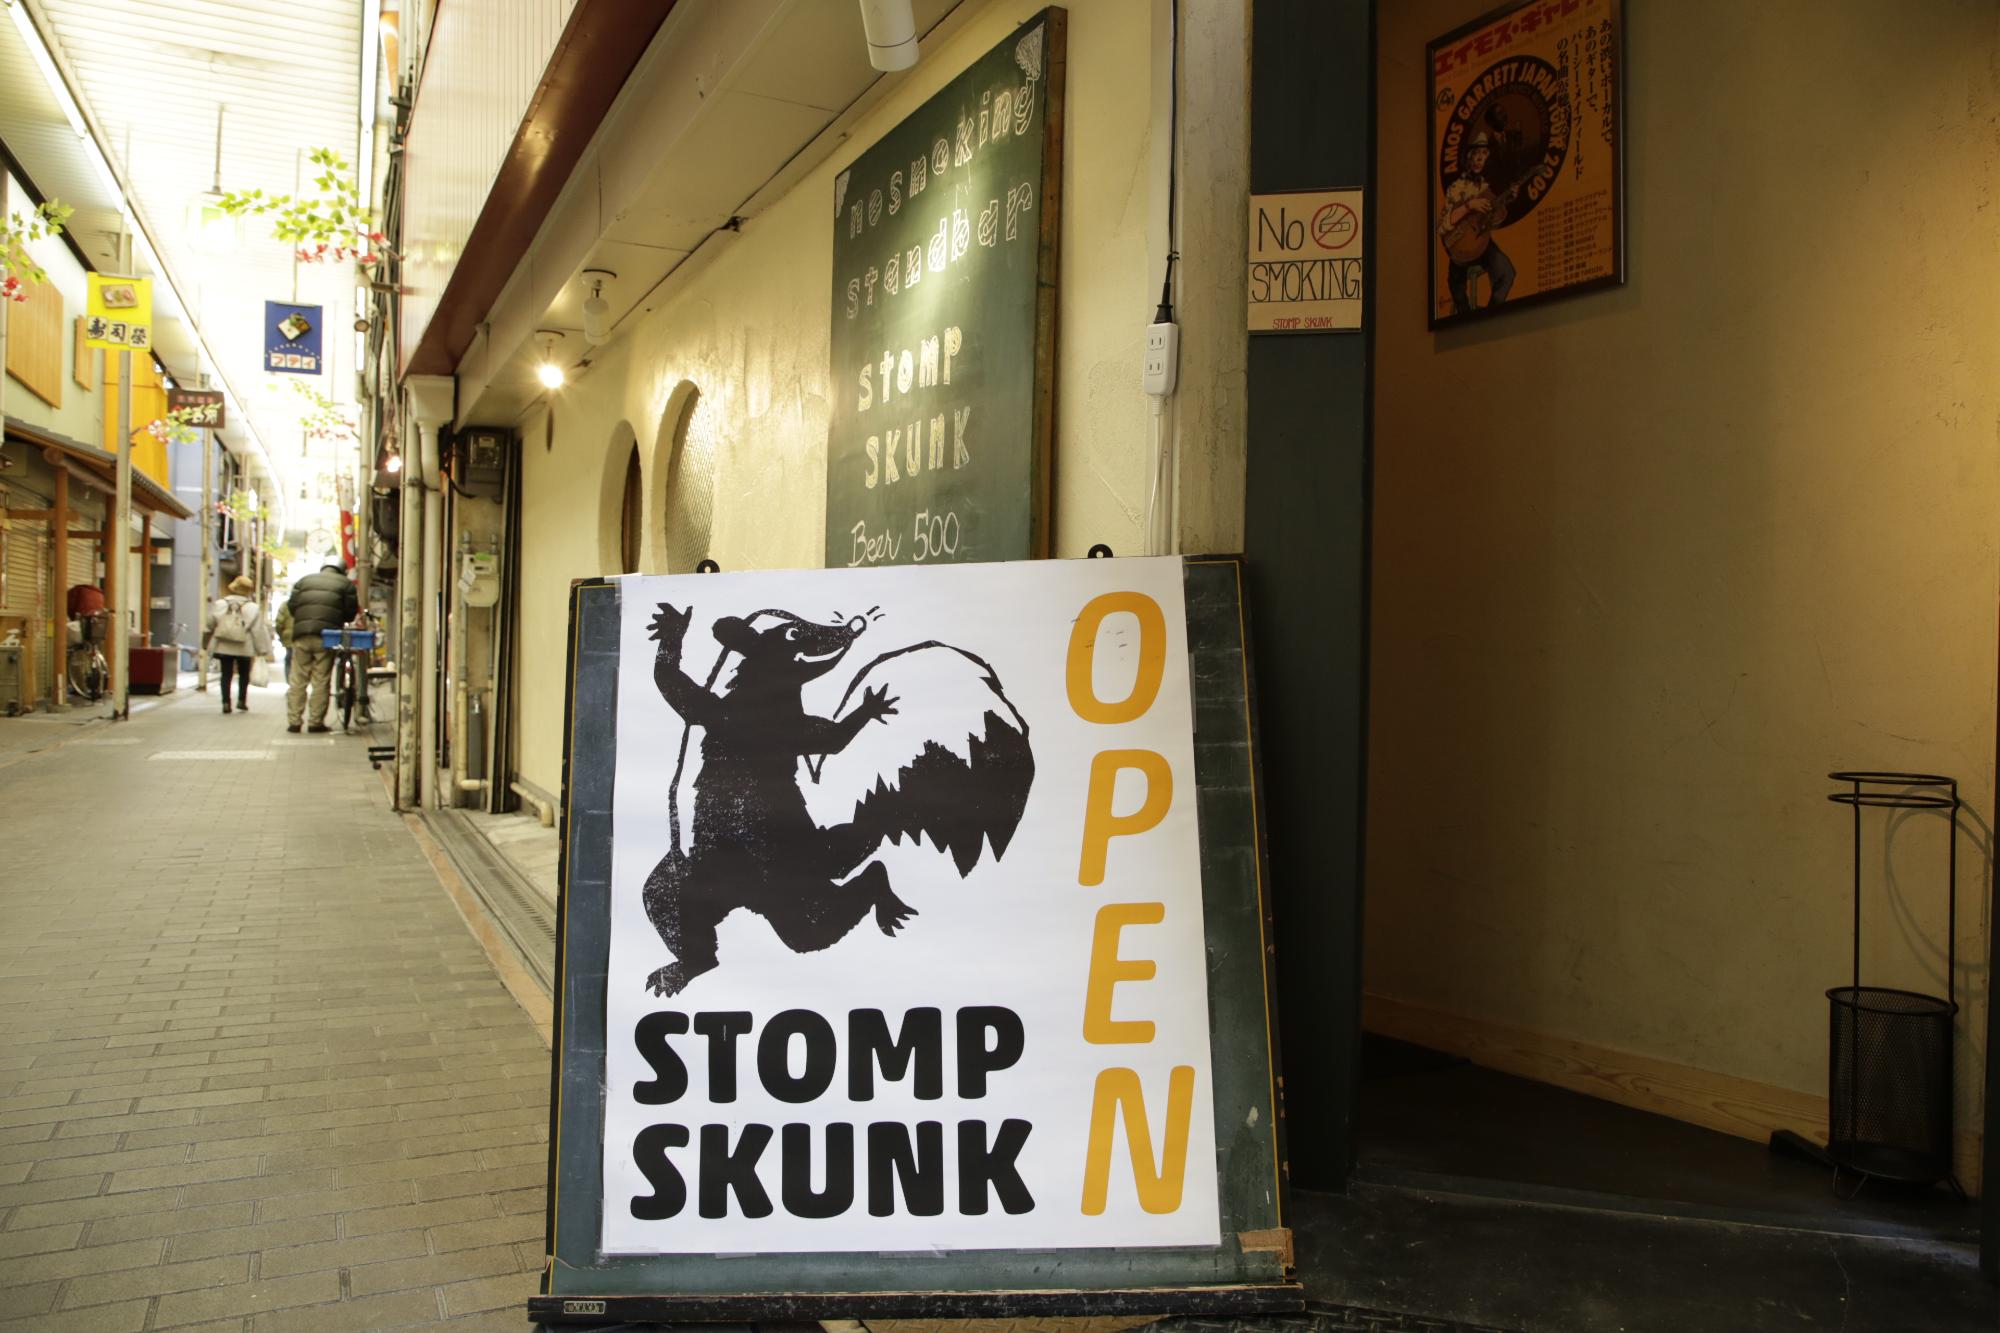 STOMP SKUNKの外観を写した写真。入口にはスカンクの絵が描かれた看板が立てかけられており、大きくオープンと書かれている。